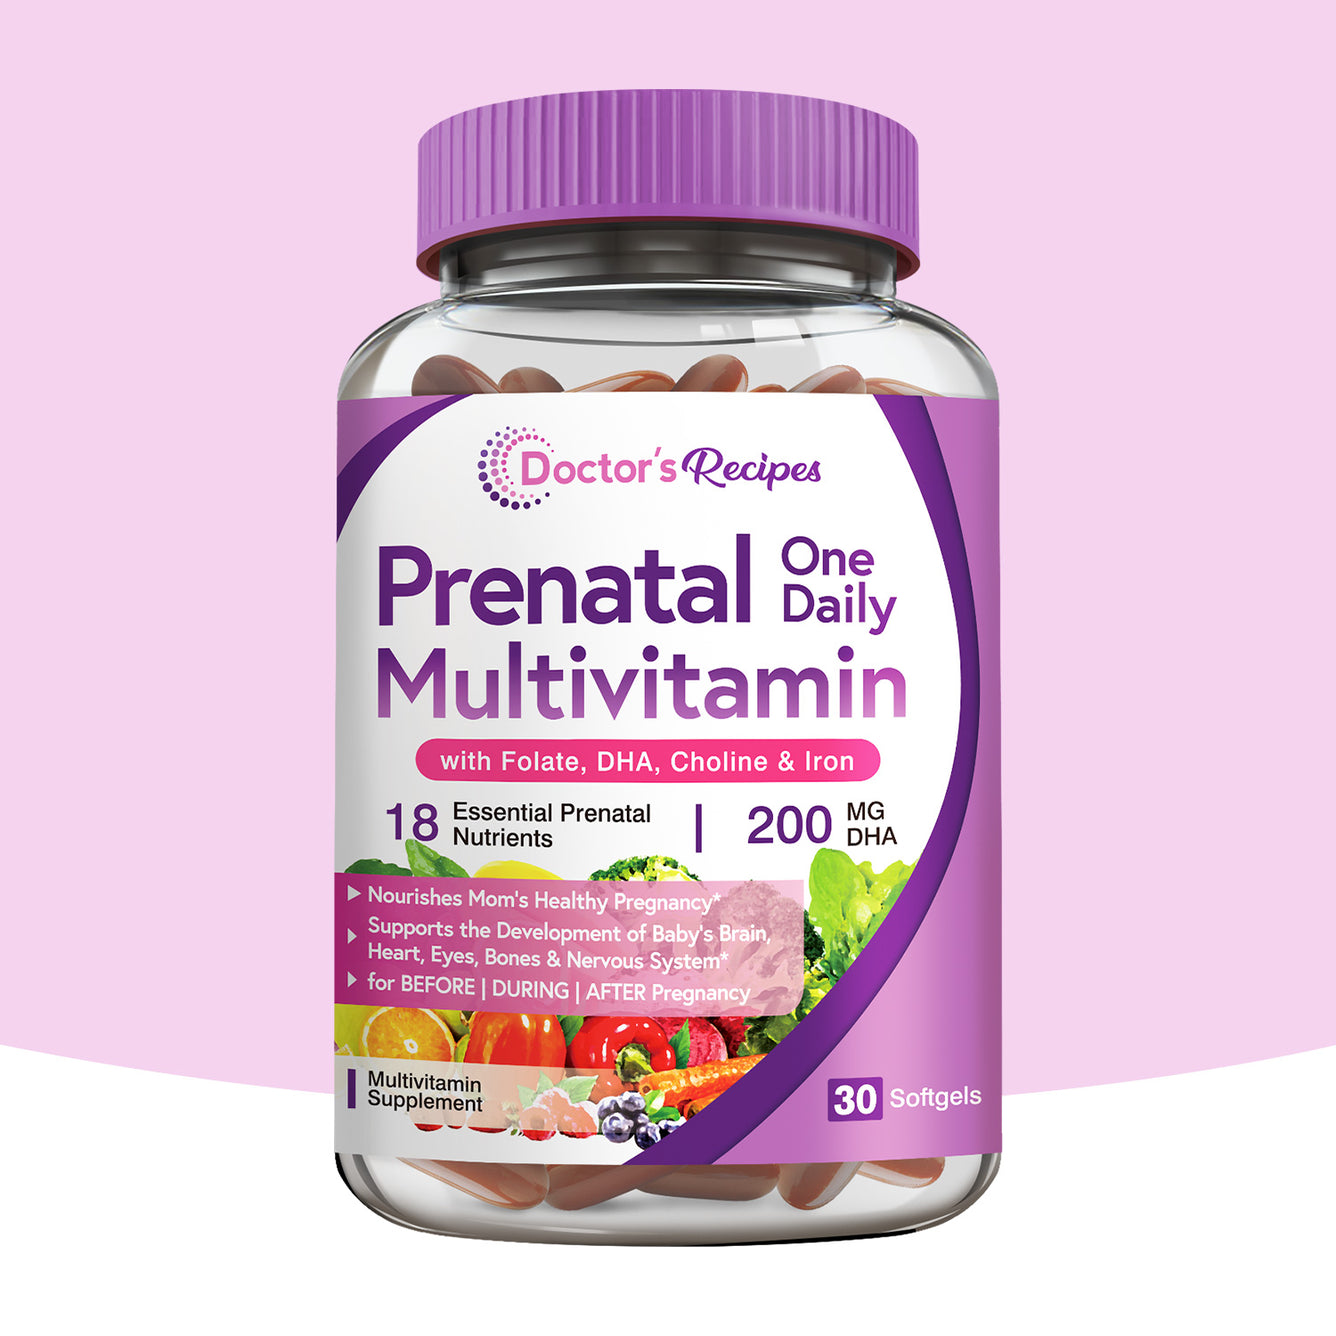 ONE Daily Prenatal Multivitamin